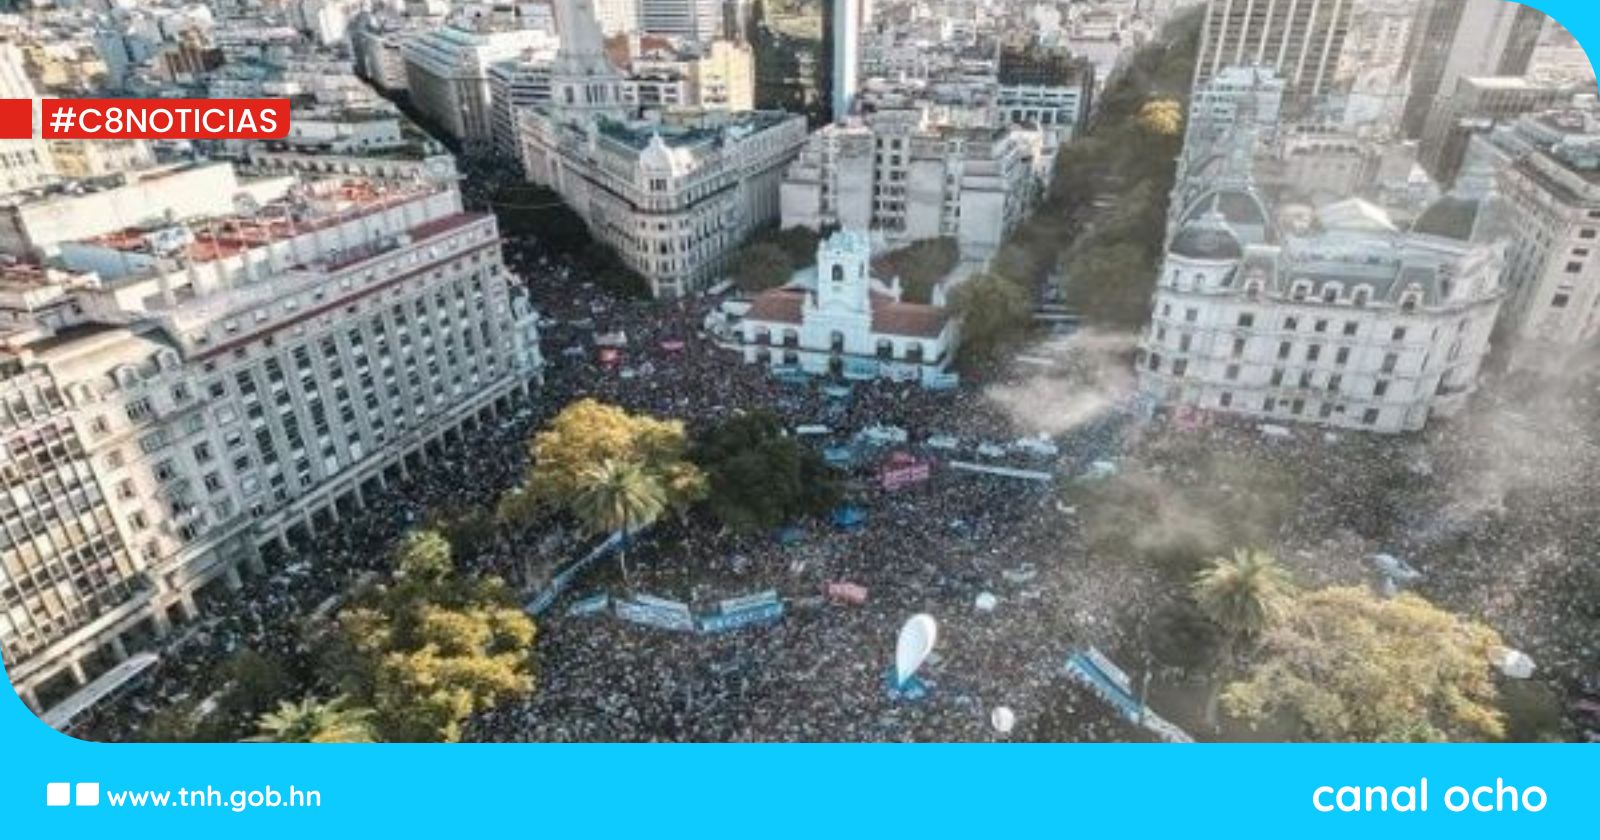 Realizan marcha en defensa de la educación pública y el presupuesto en Argentina